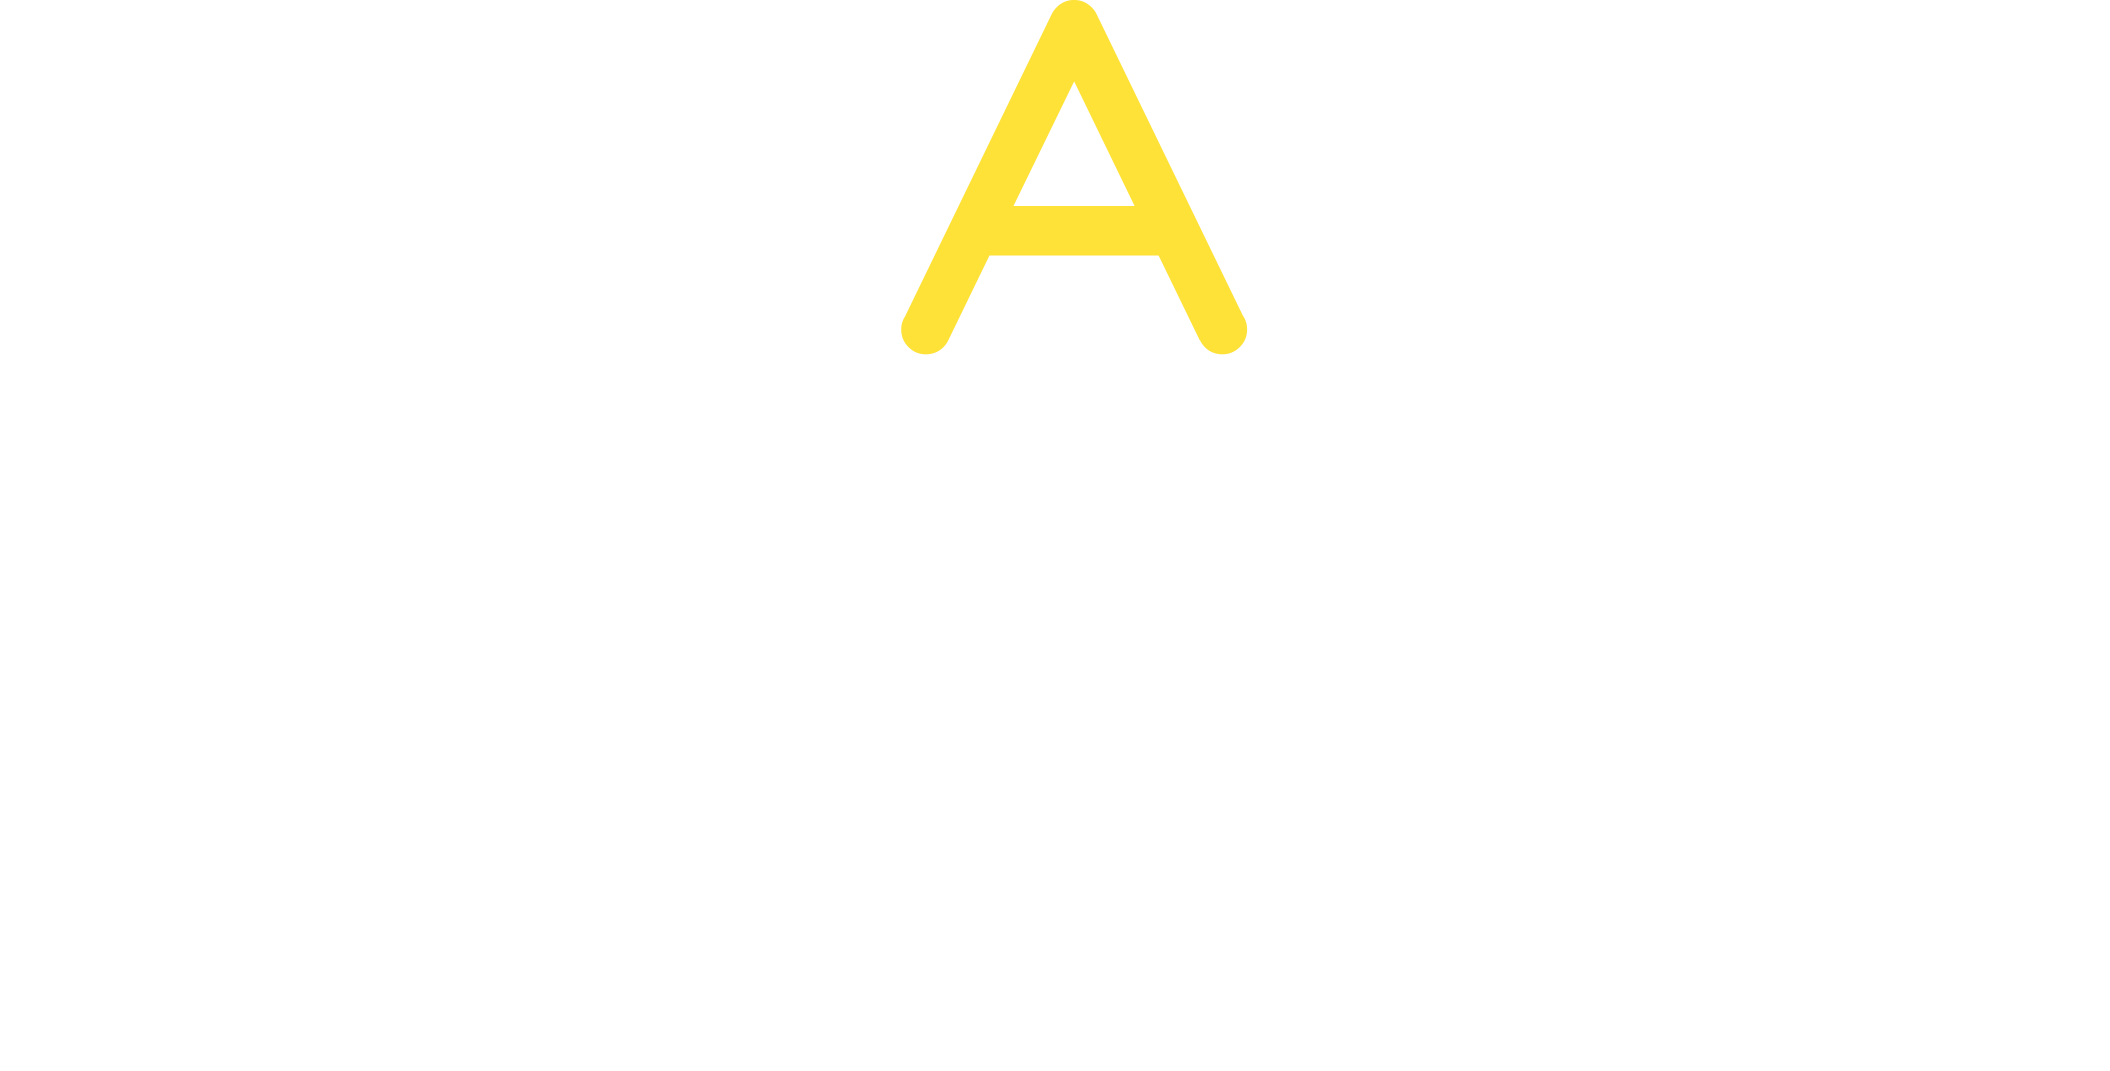 Λογότυπο Rent A Bike Logothetis σε άσπρο και κίτρινο